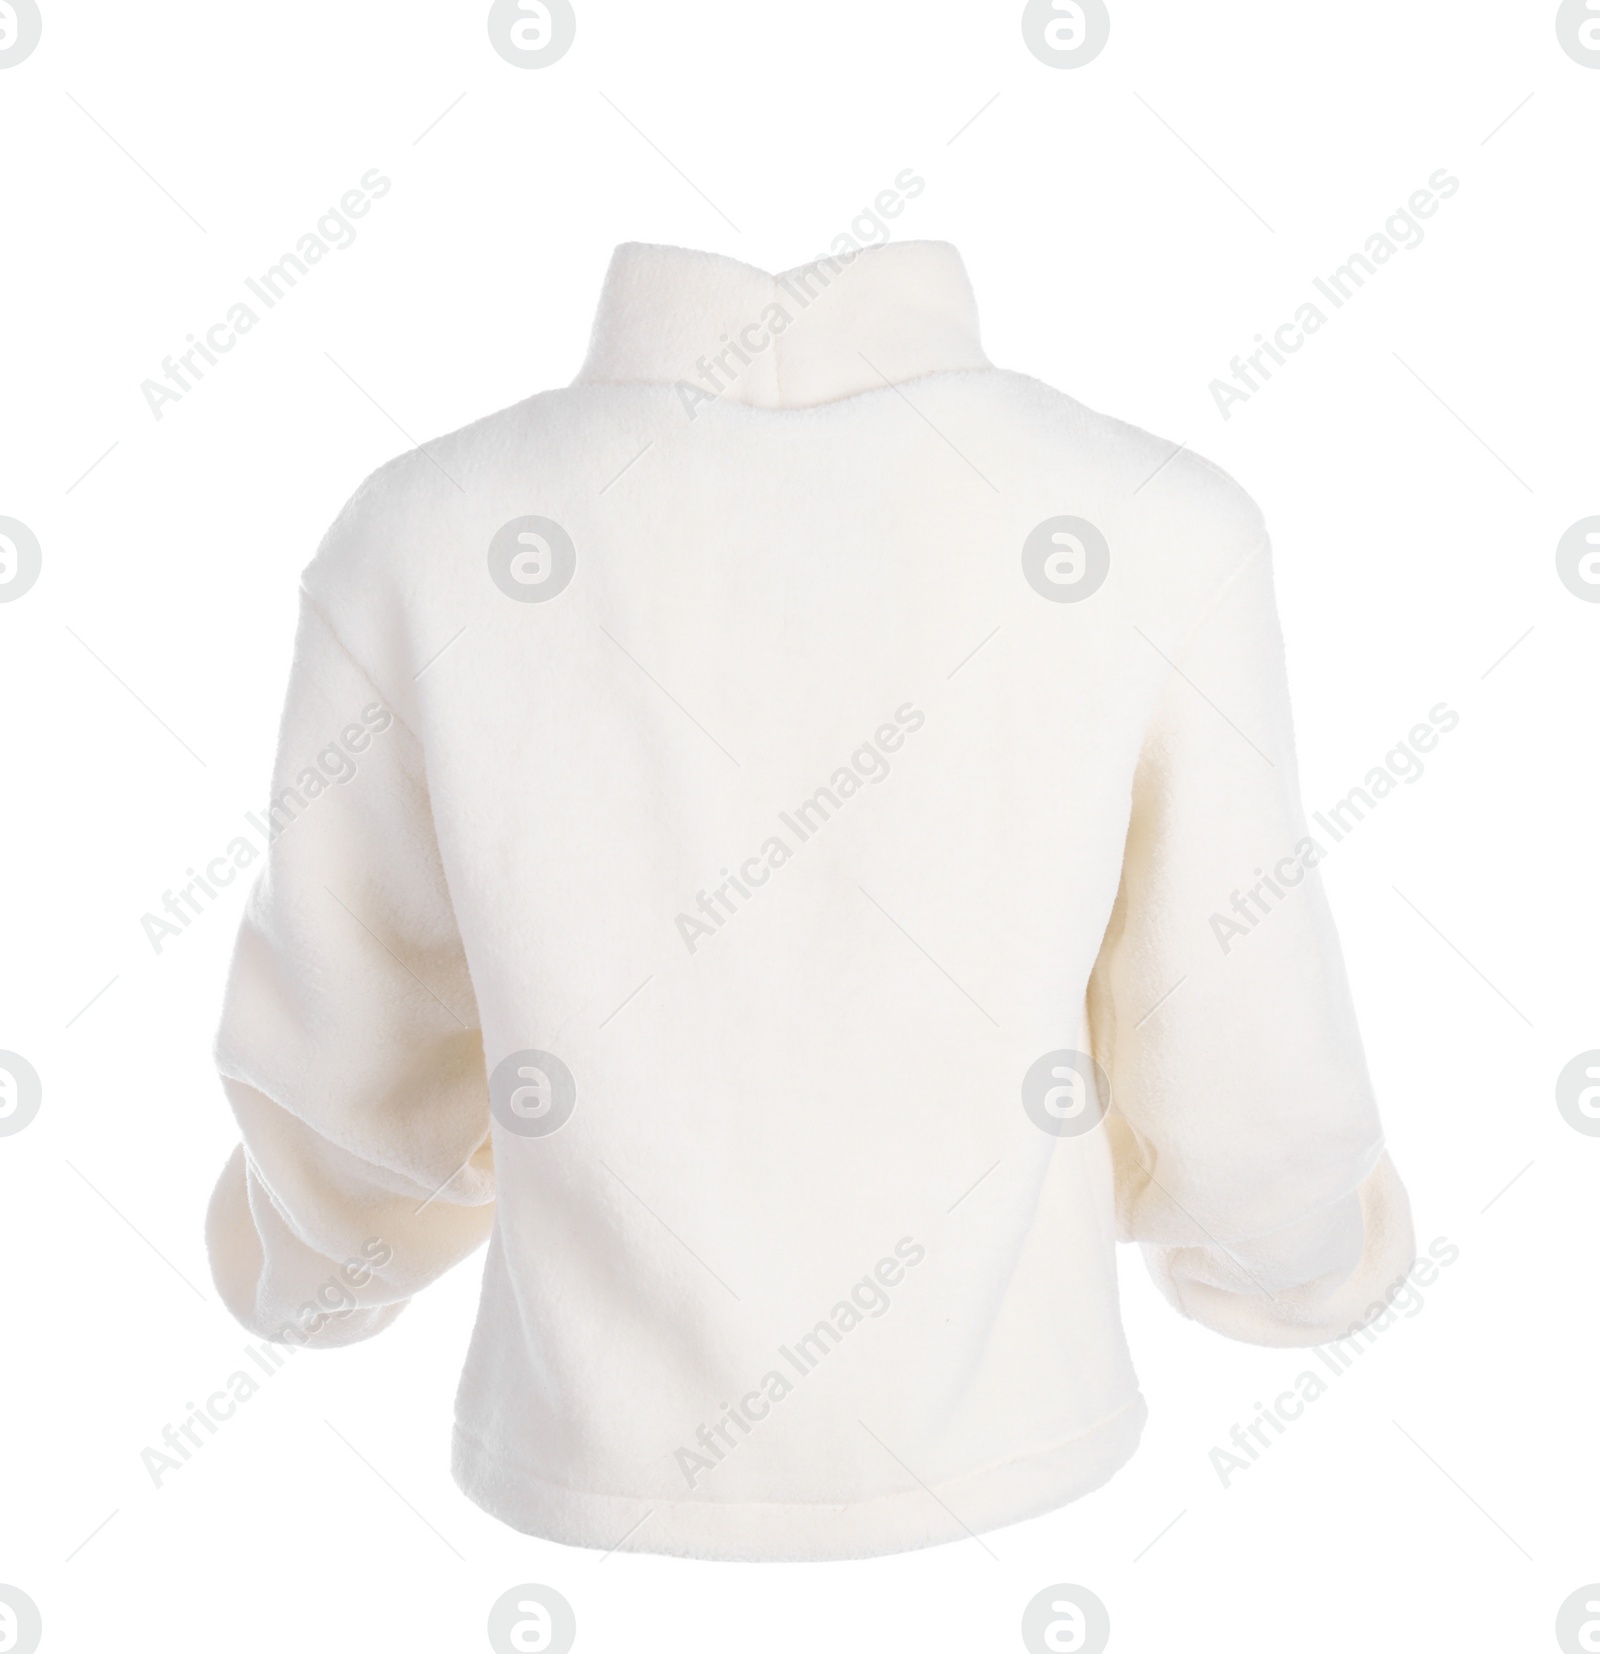 Photo of Stylish warm cashmere sweater isolated on white